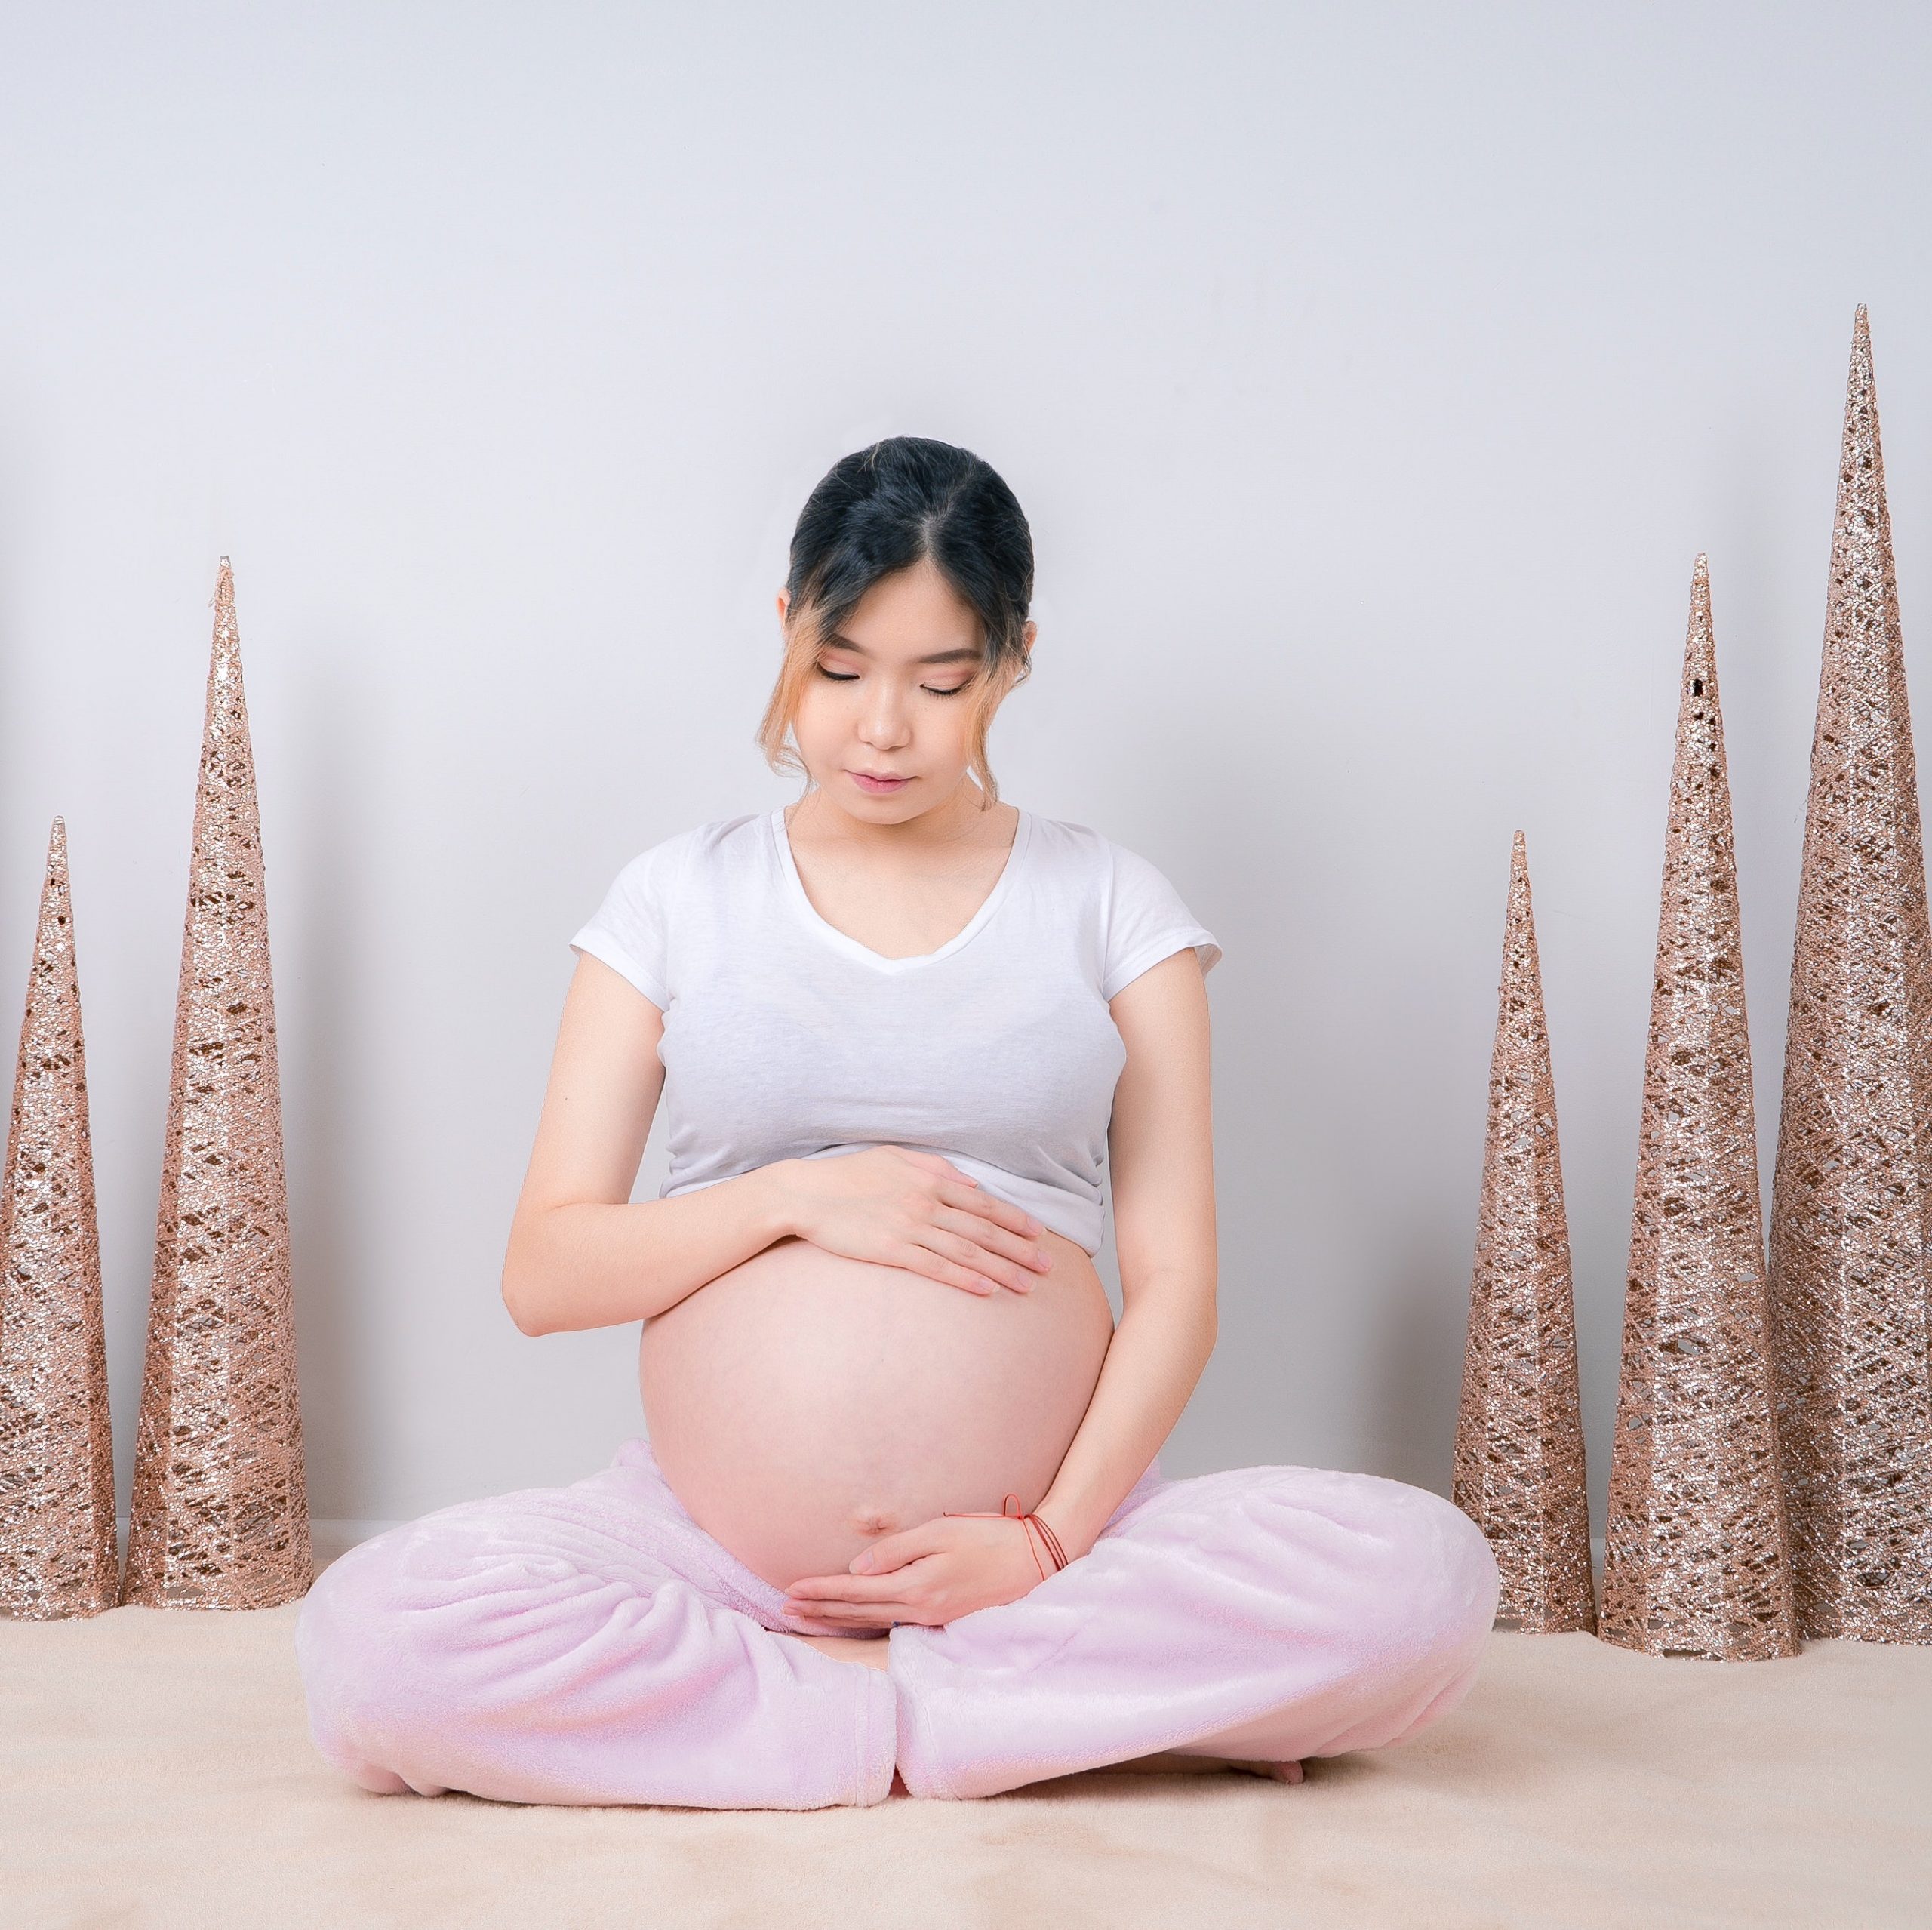 Vorbereitung auf die Schwangerschaft: Ein gesunder Lebensstil minimiert Risikofaktoren